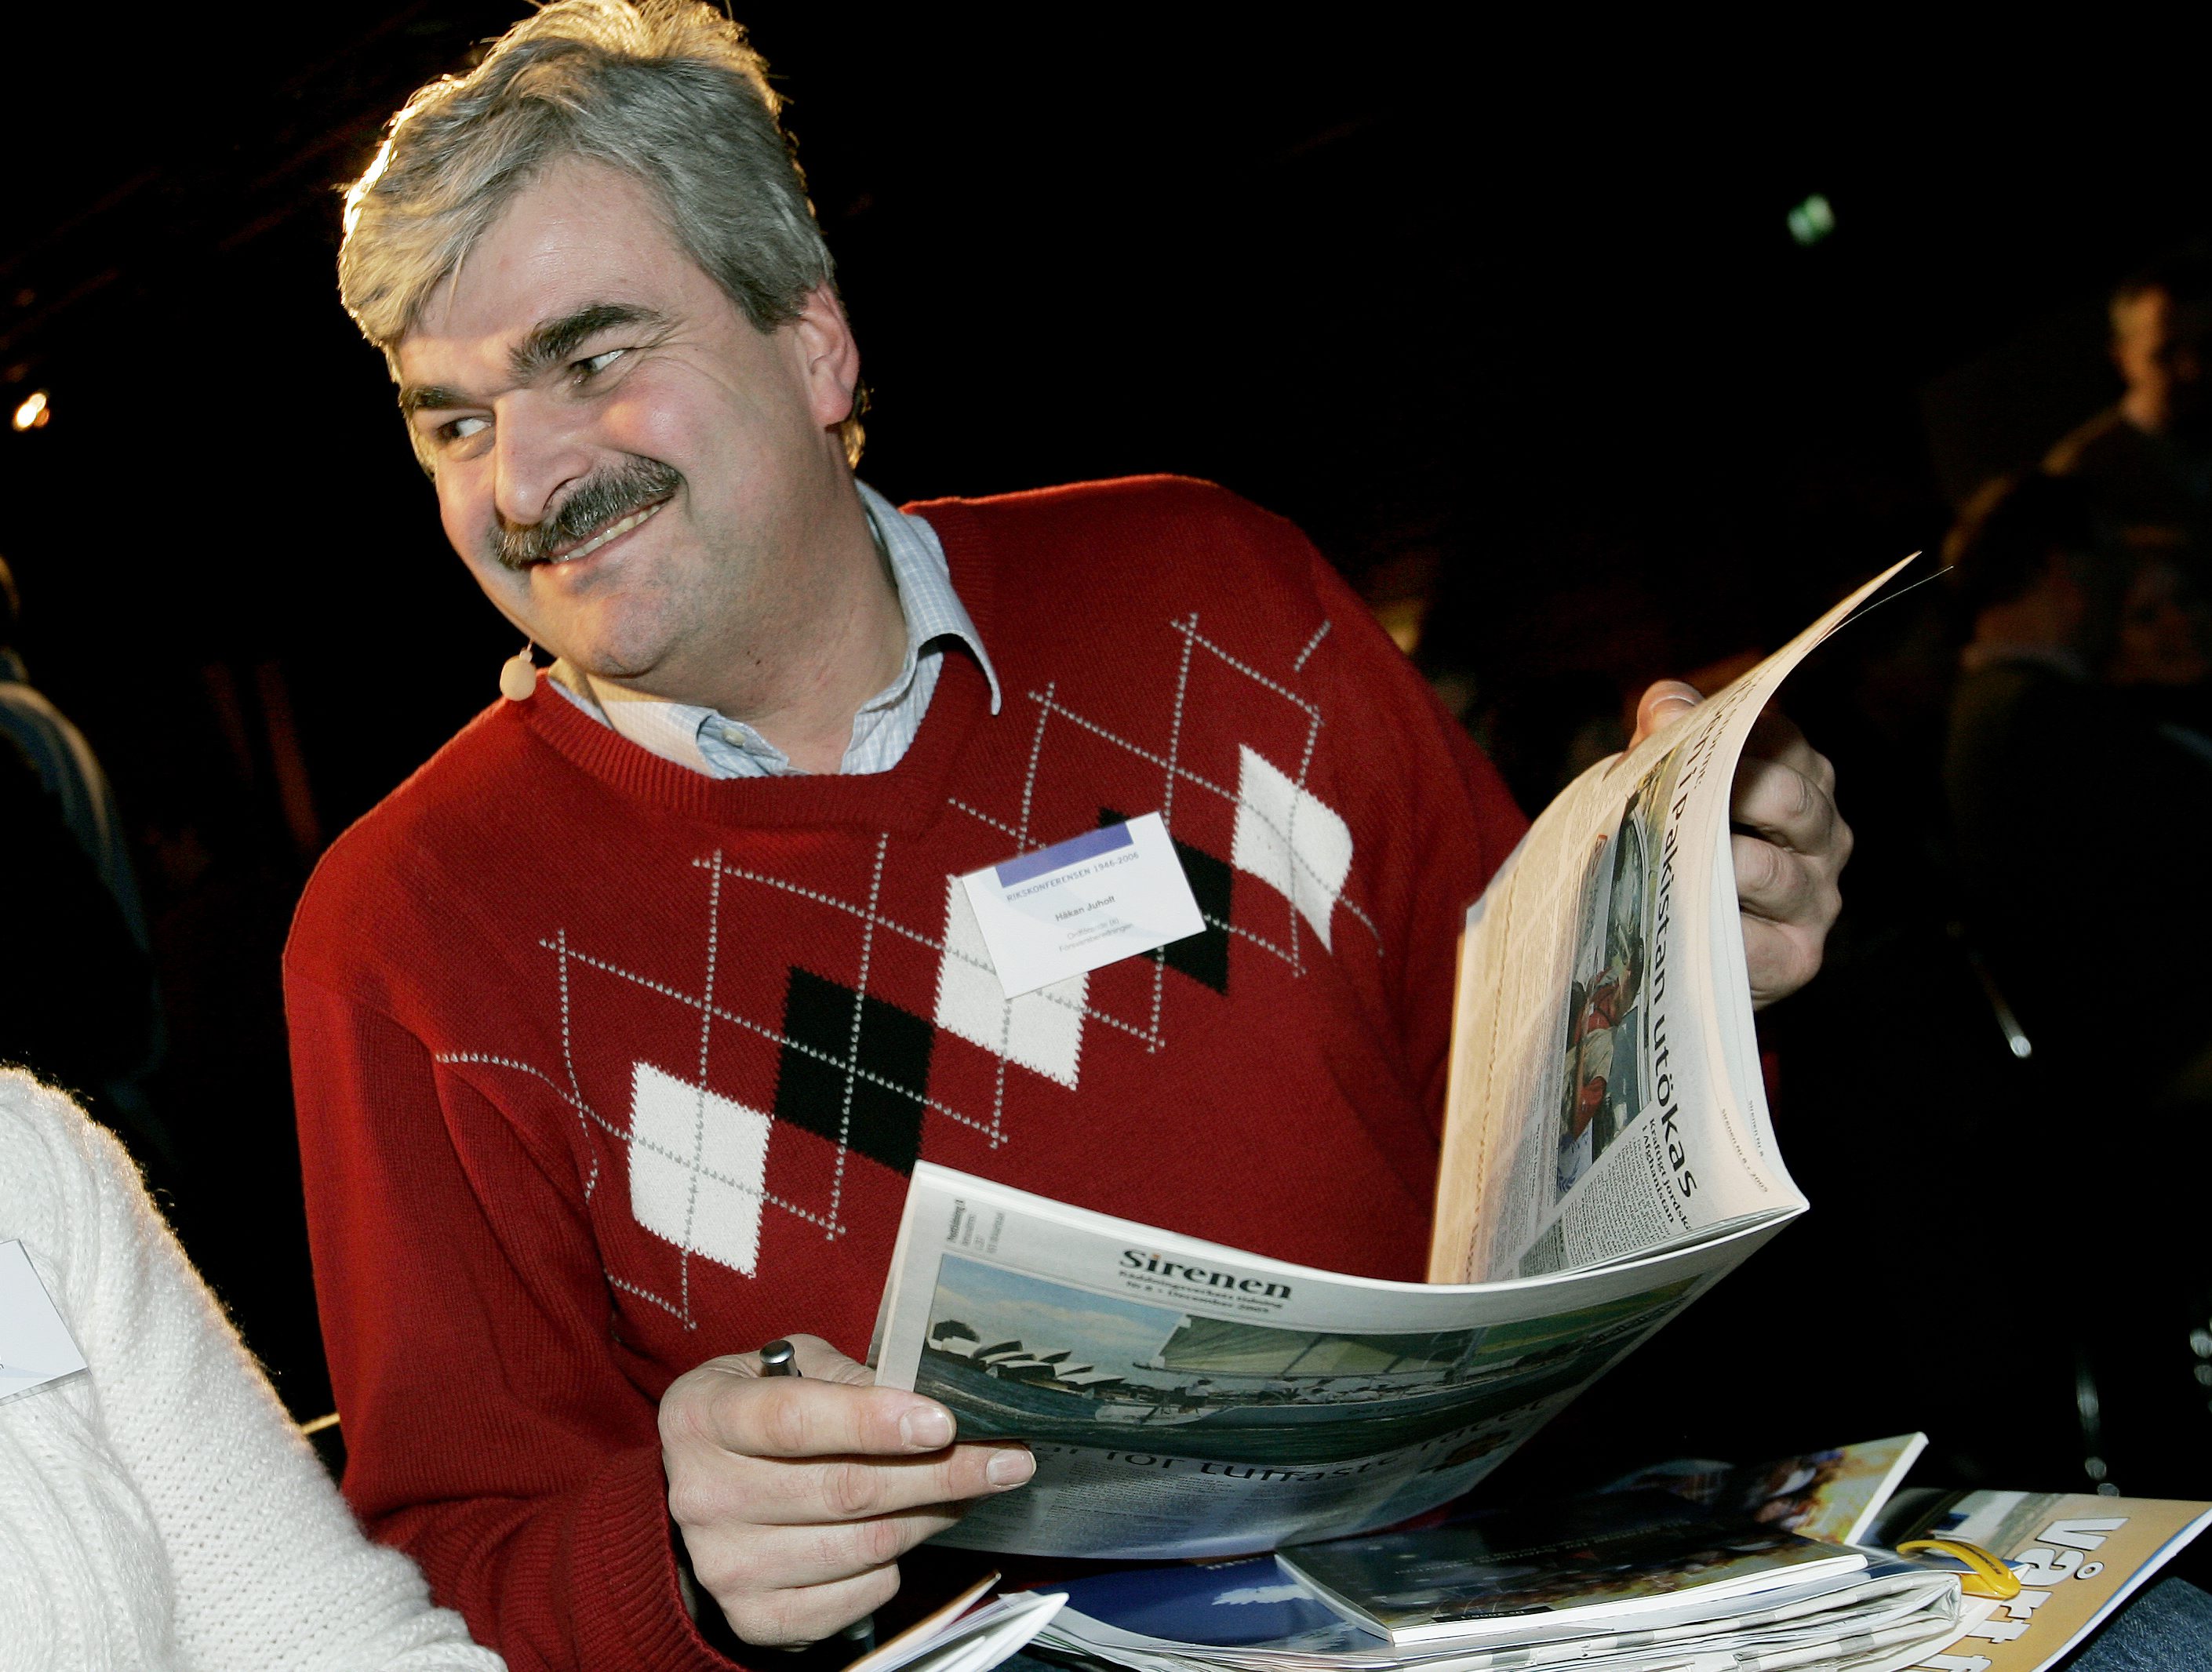 Juholt läser tidningen 2006.